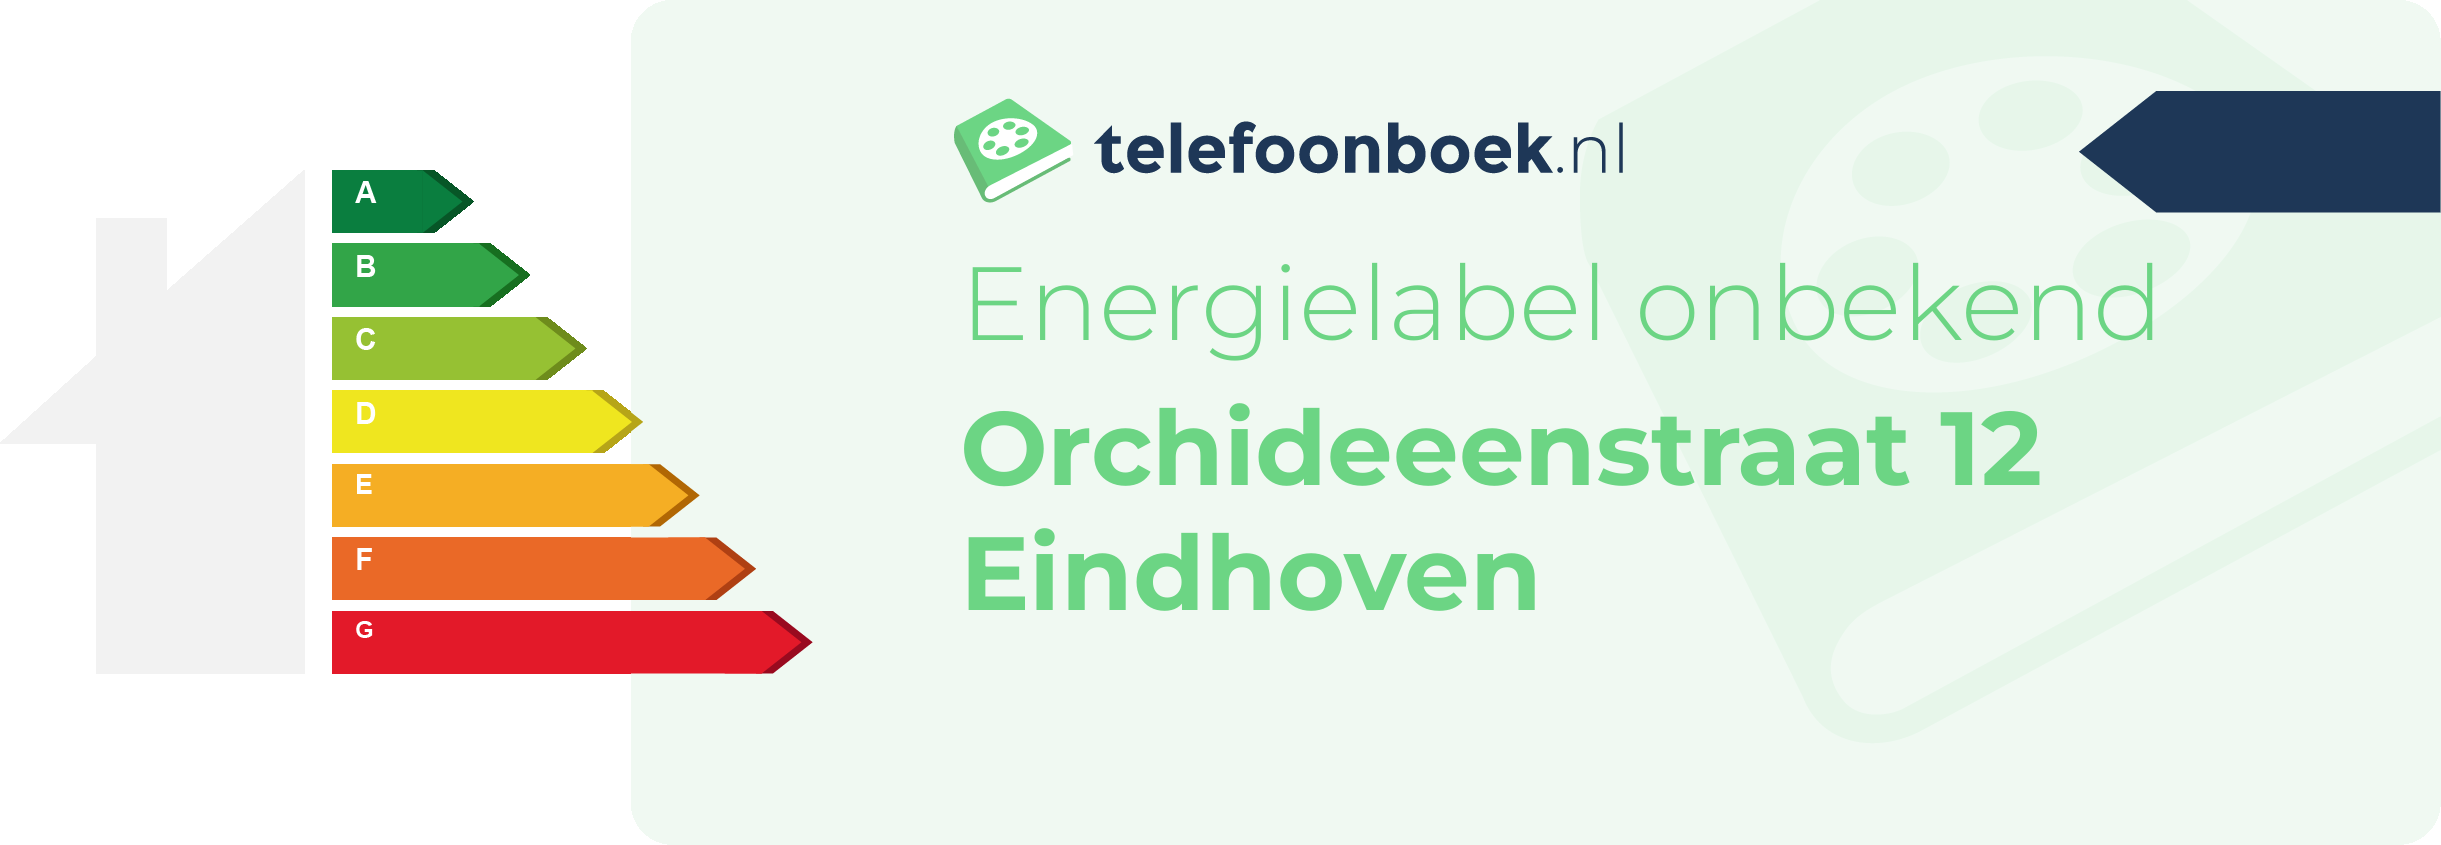 Energielabel Orchideeenstraat 12 Eindhoven